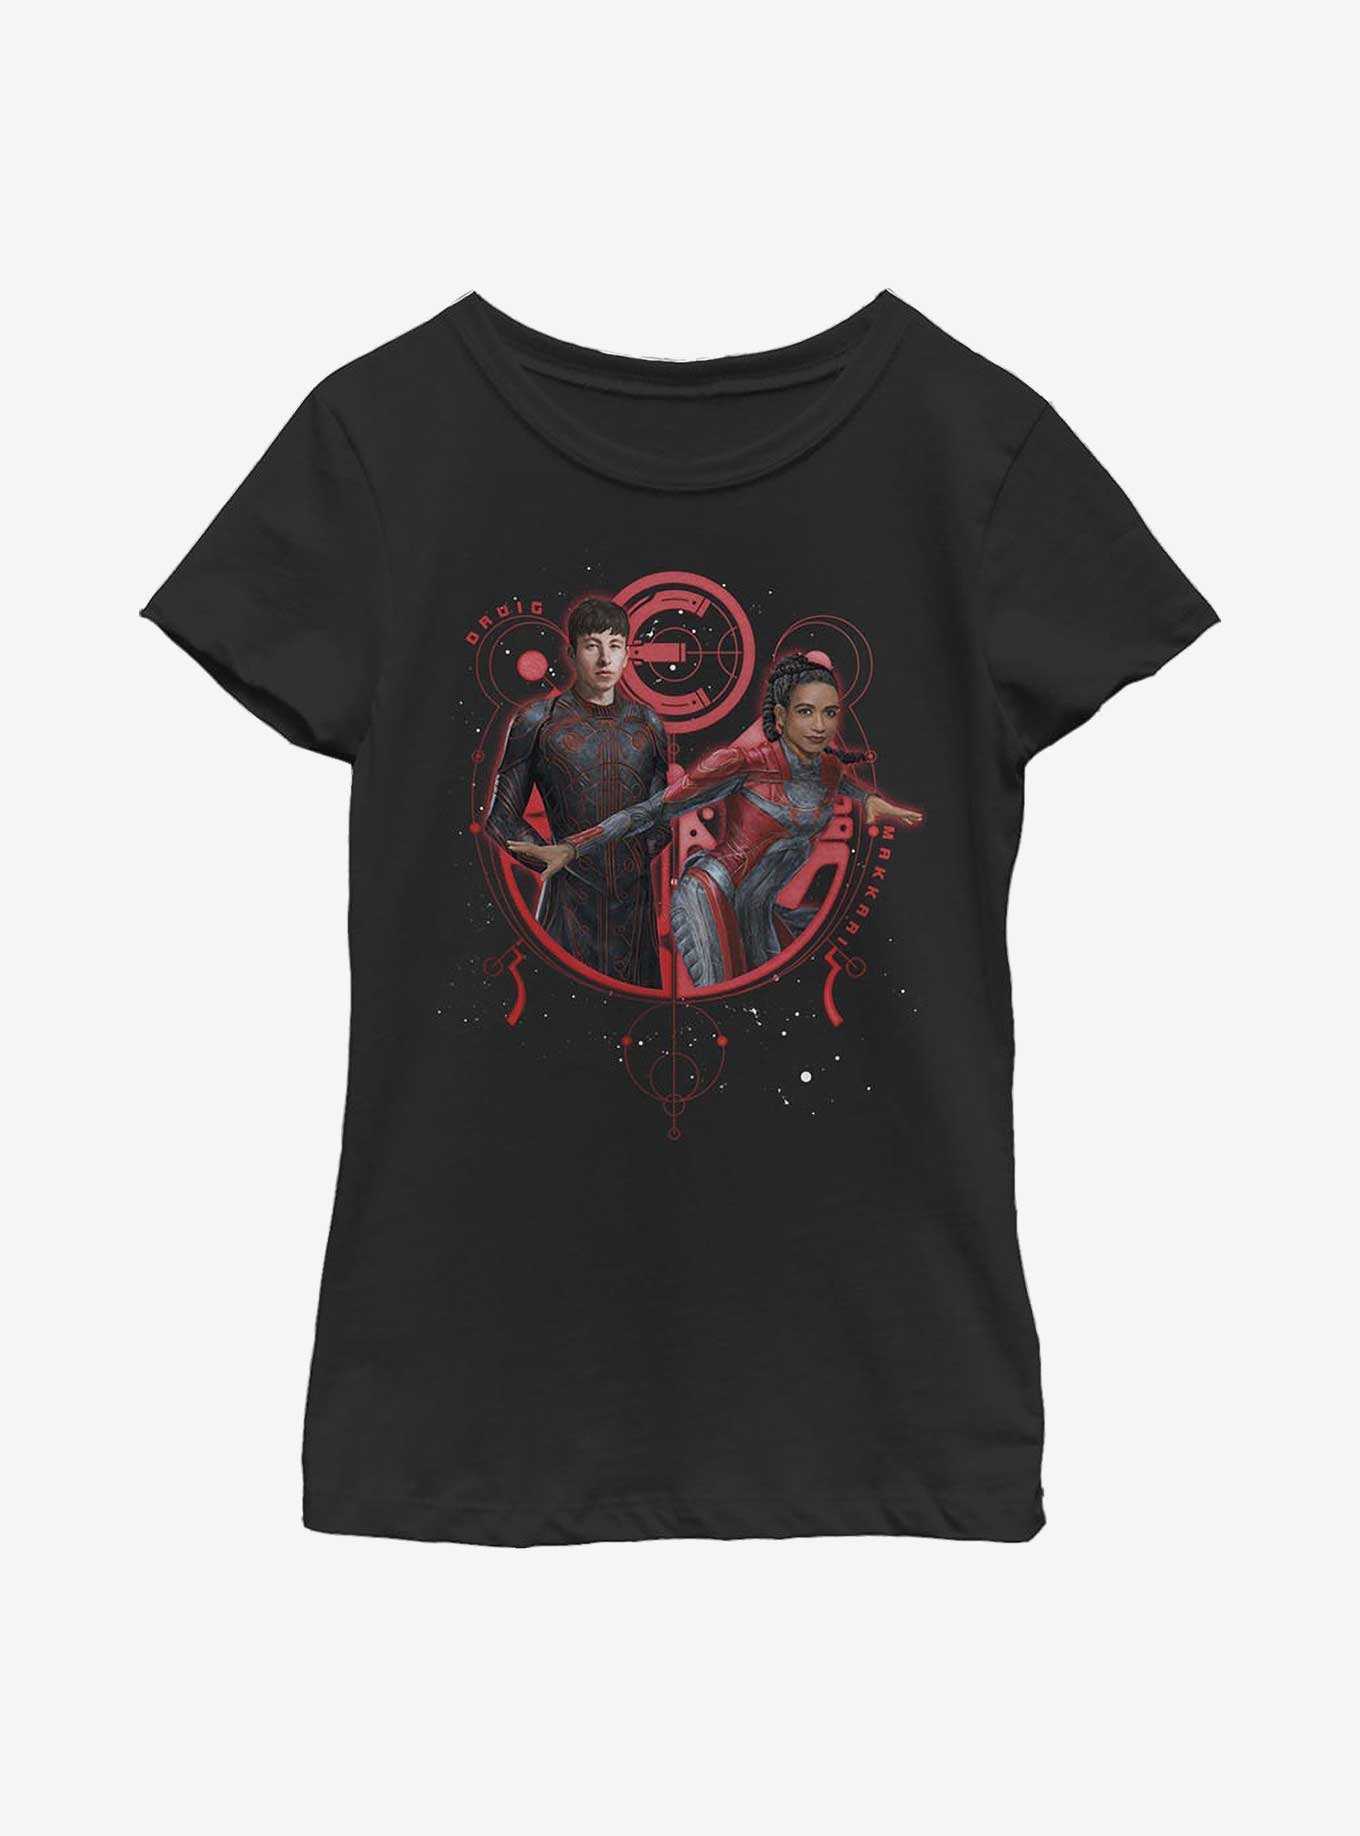 Marvel Eternals Druig & Makkari Duo Youth Girls T-Shirt, , hi-res